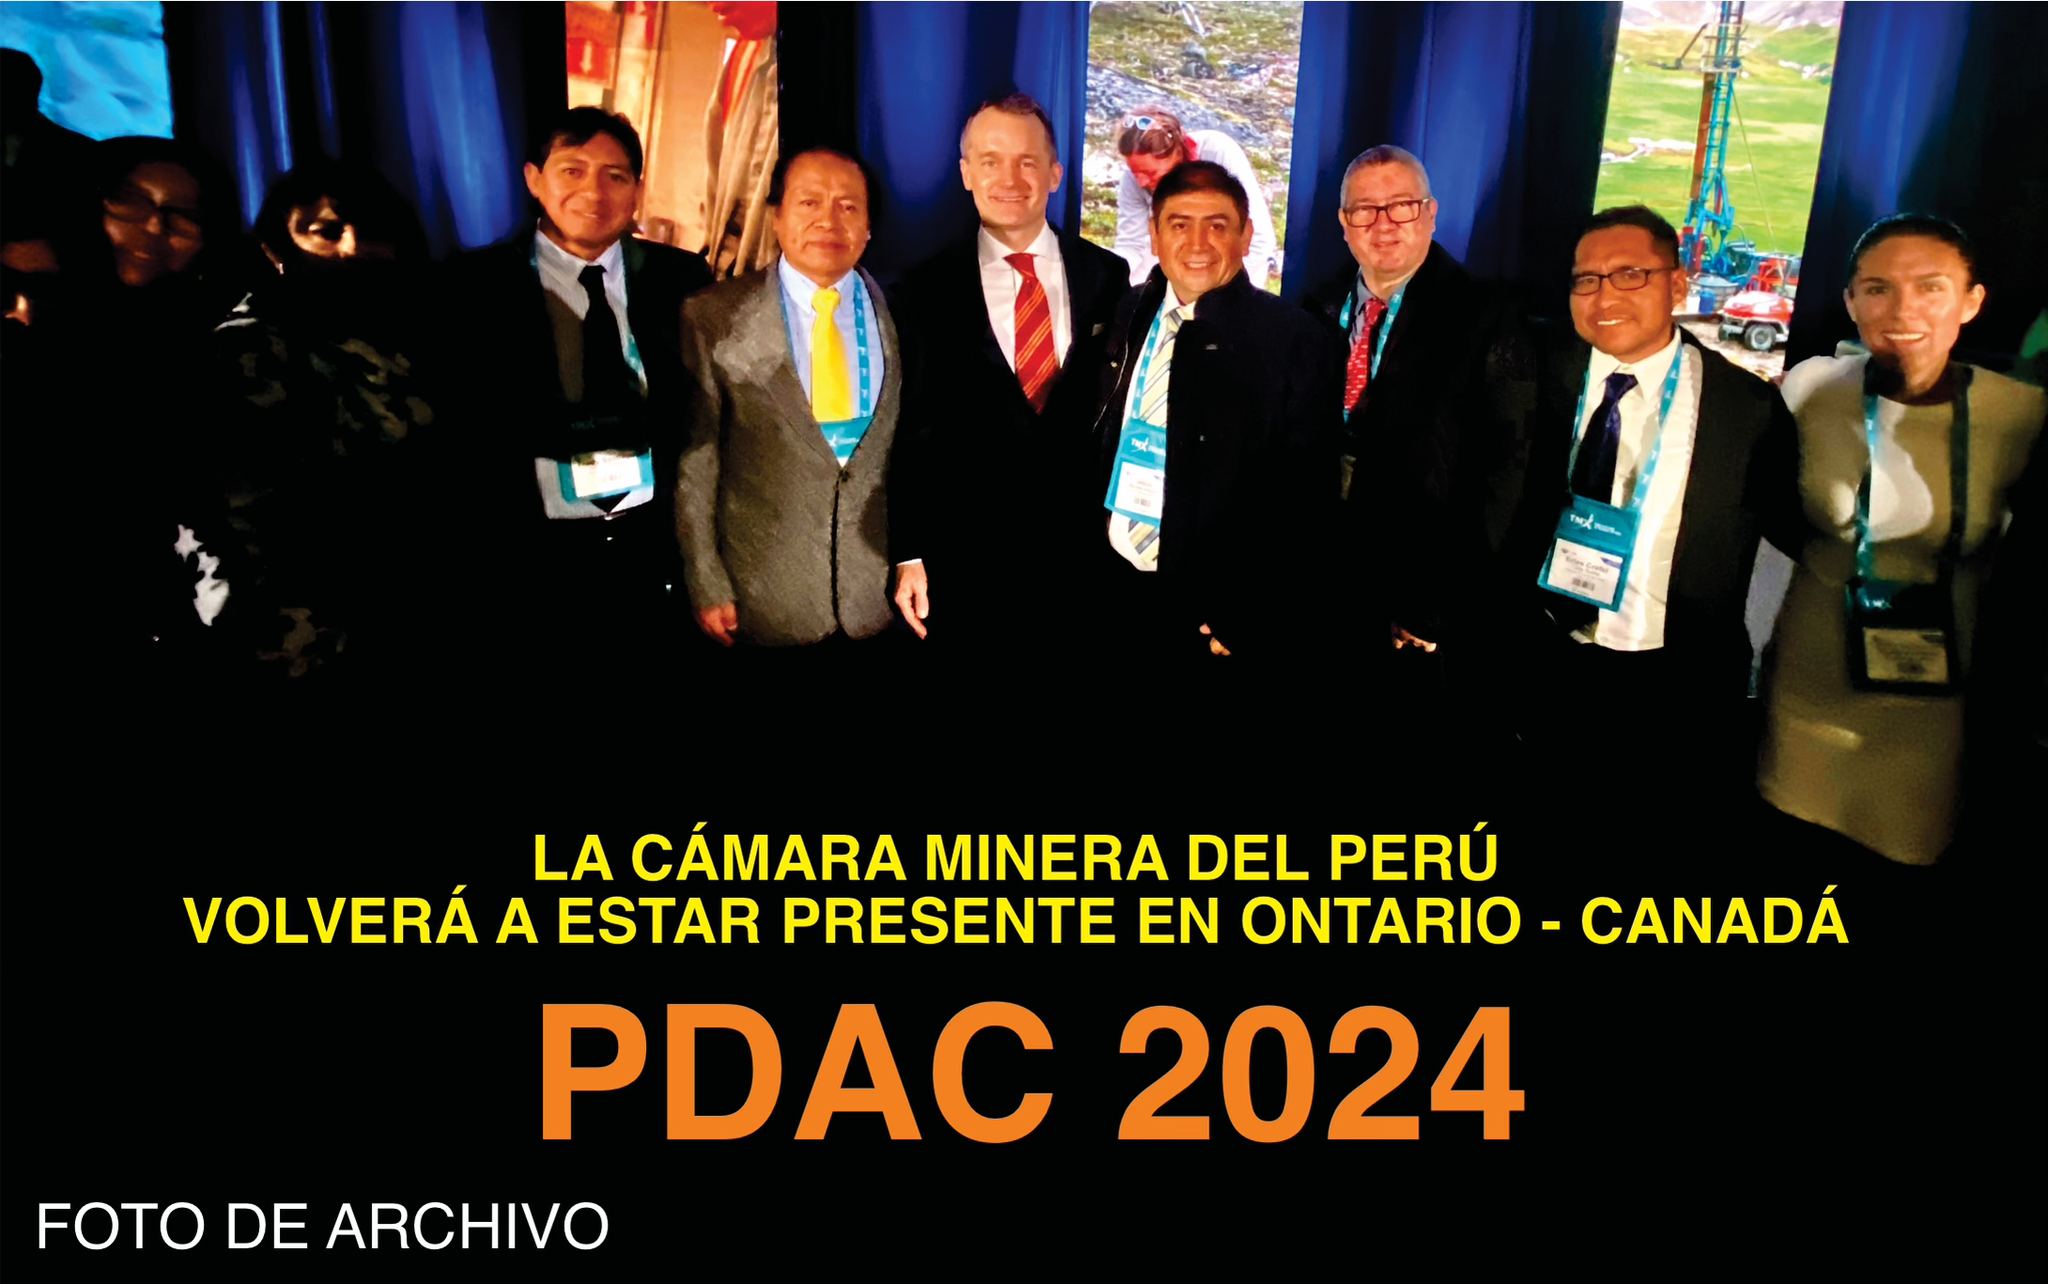 La Cámara Minera del Perú estará presente en el PDAC 2024 con la presencia de altos funcionarios